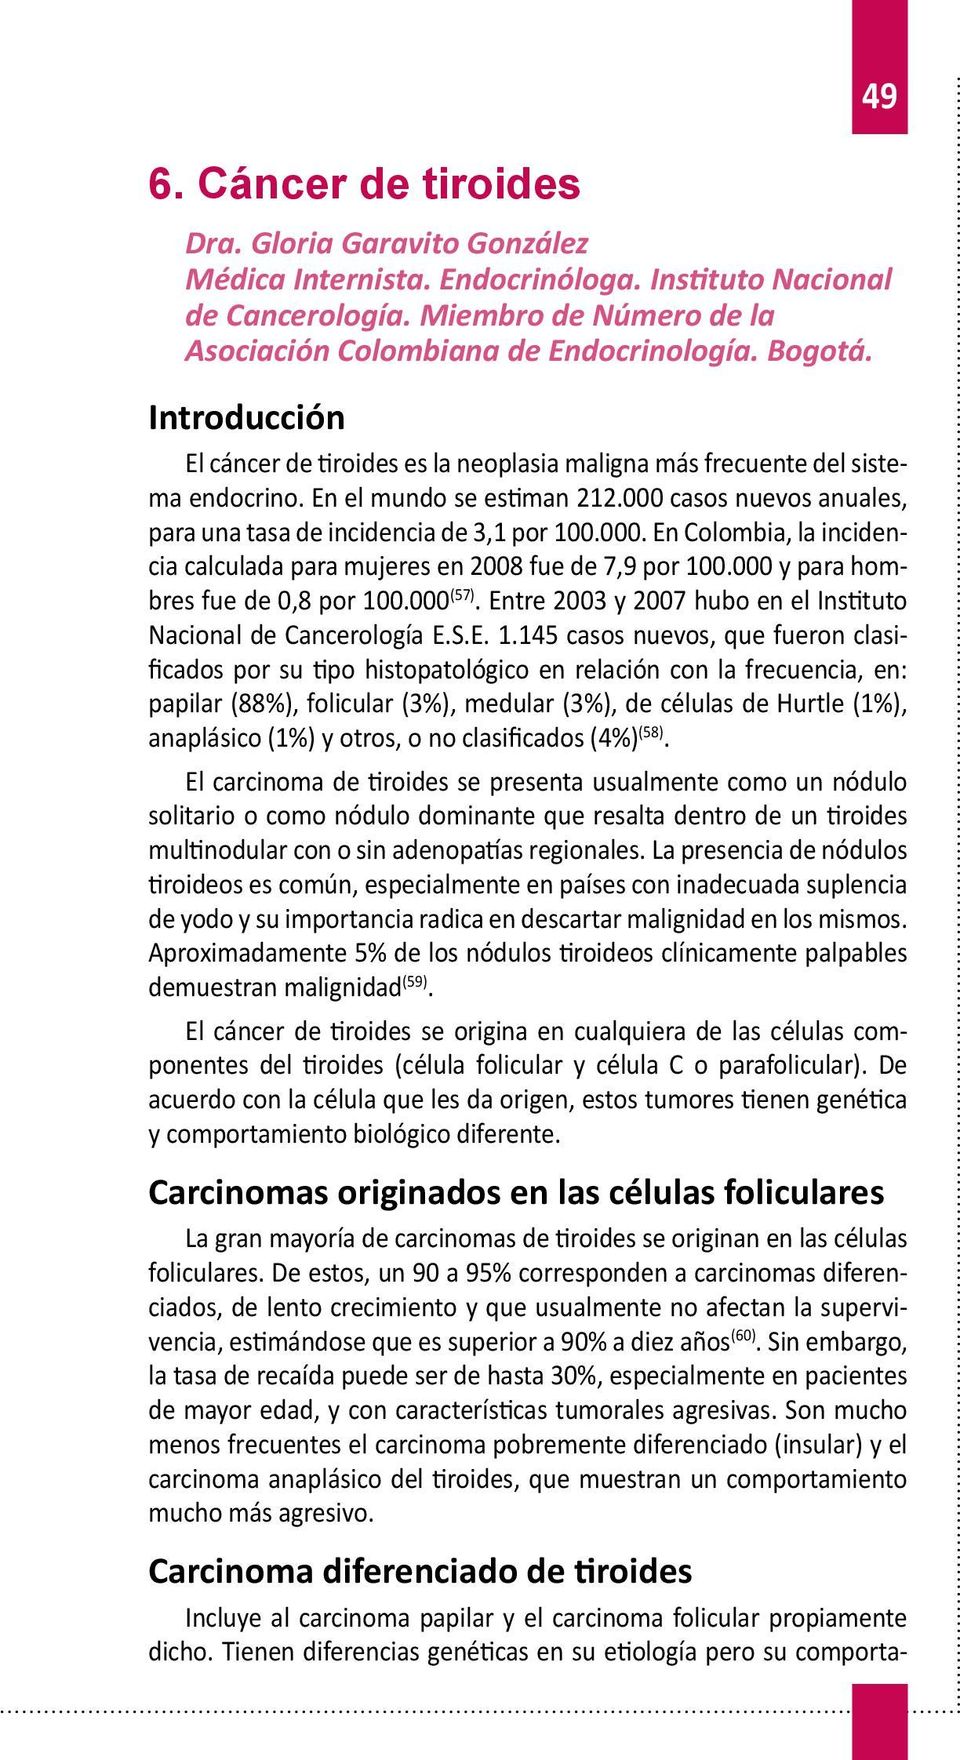 casos nuevos anuales, para una tasa de incidencia de 3,1 por 100.000. En Colombia, la incidencia calculada para mujeres en 2008 fue de 7,9 por 100.000 y para hombres fue de 0,8 por 100.000 (57).